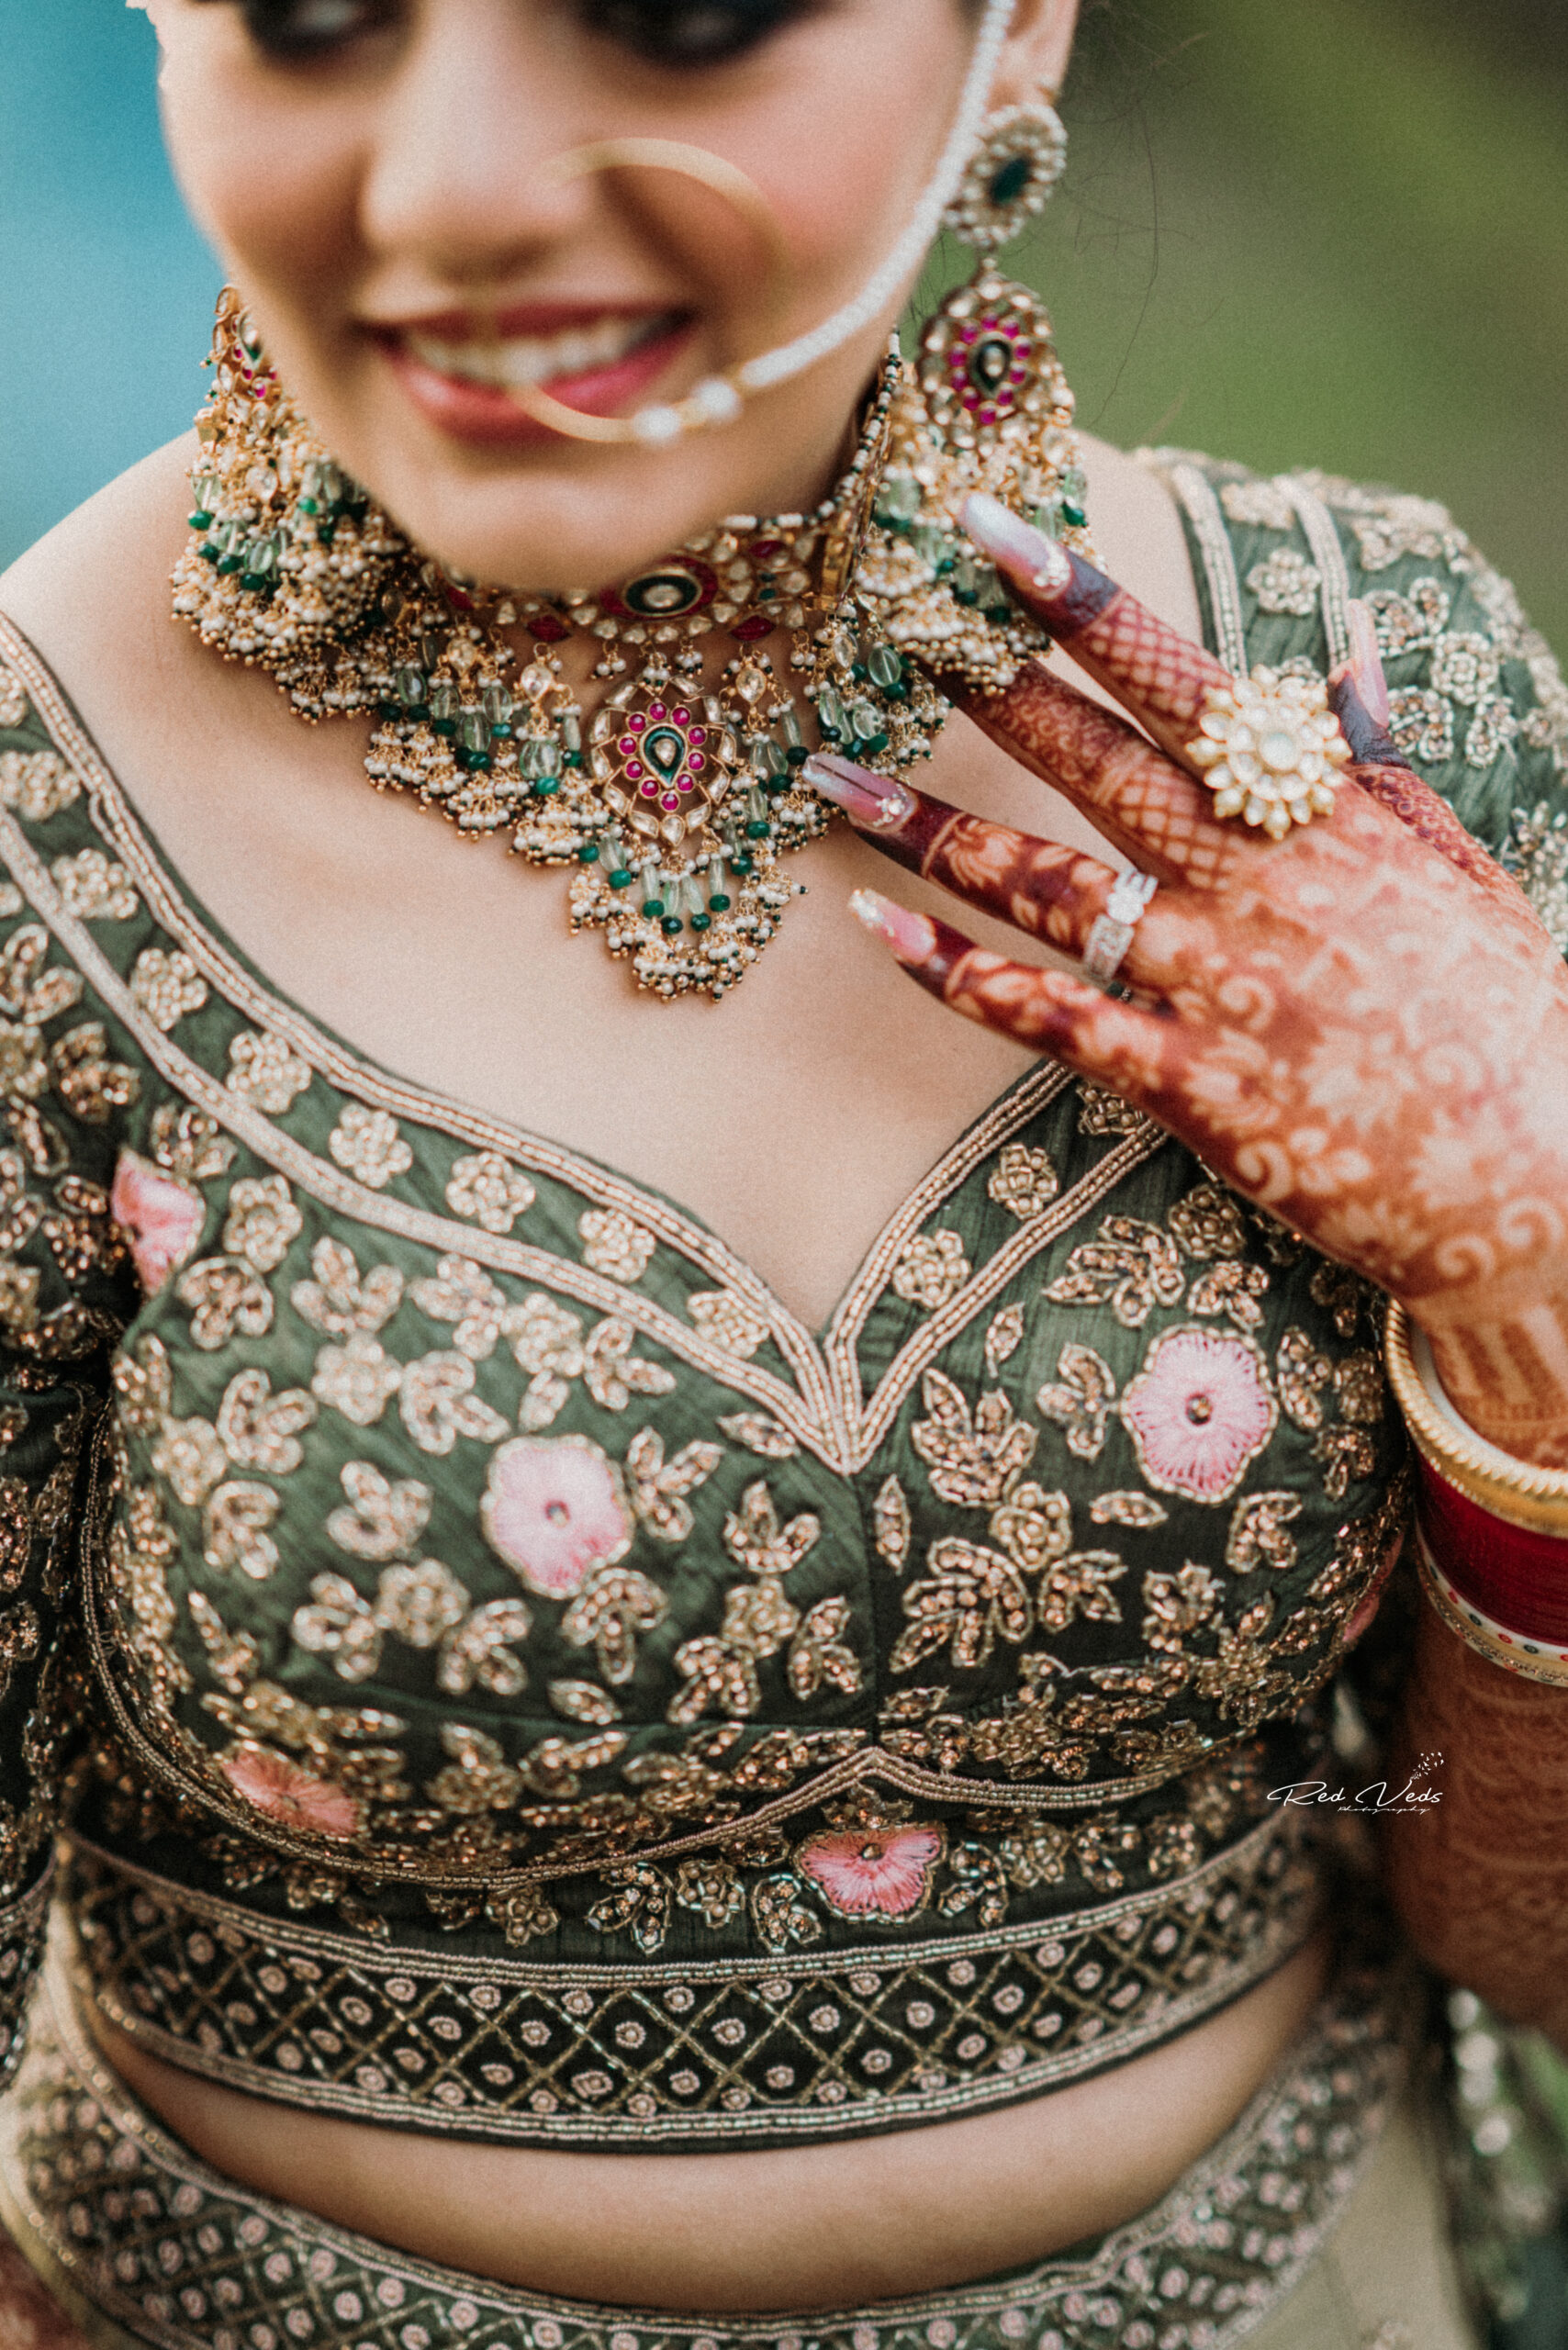 Wedding photography | Indian wedding photography poses, Indian wedding  photography couples, Indian wedding couple photography